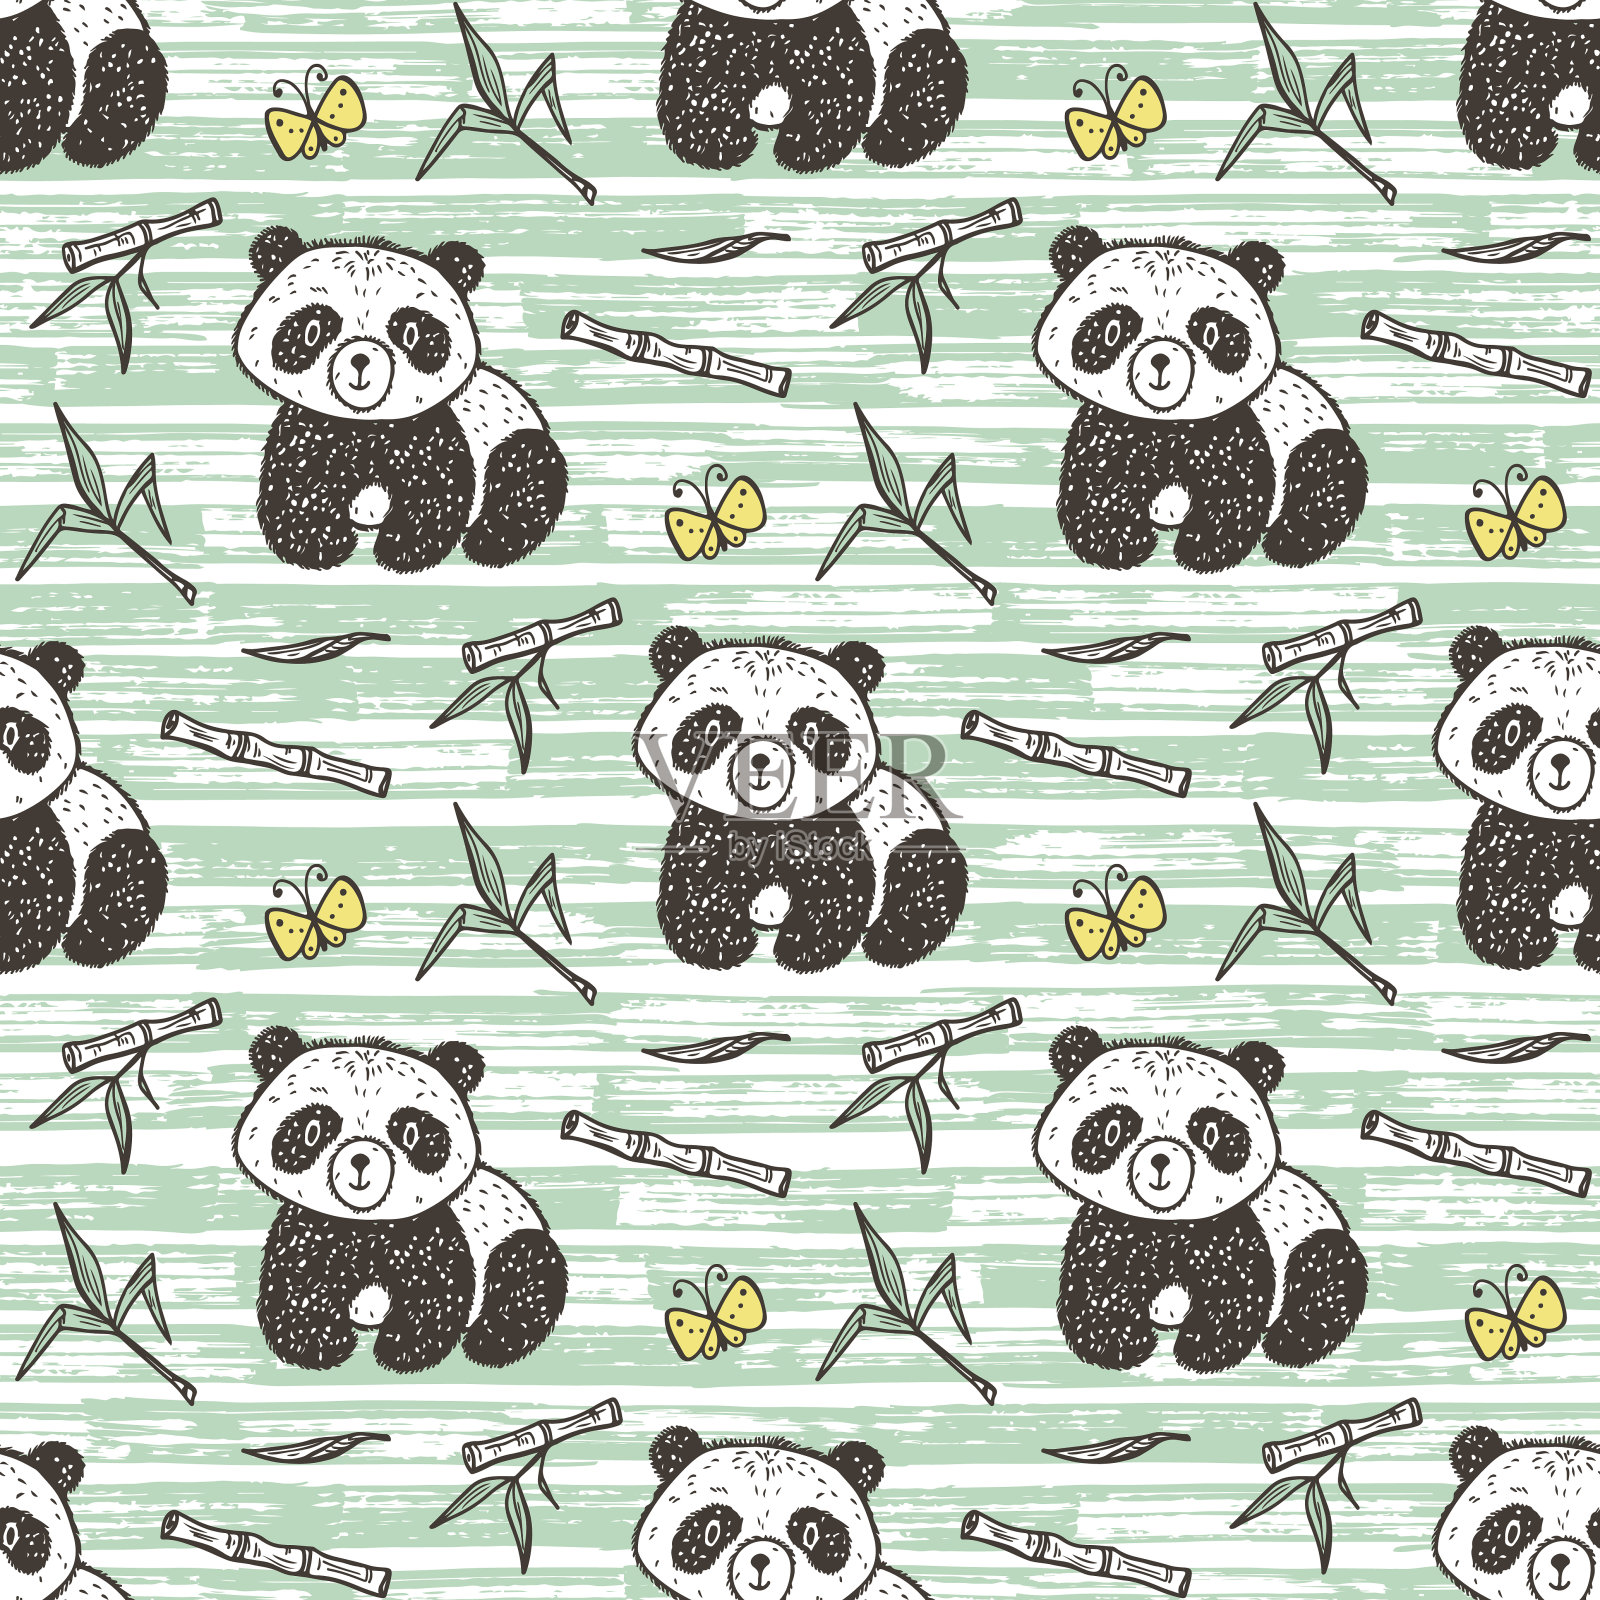 可爱的熊猫宝宝与竹子矢量无缝模式。无尽的熊猫壁纸。手绘涂鸦有趣的黑白熊。背景的孩子。插画图片素材